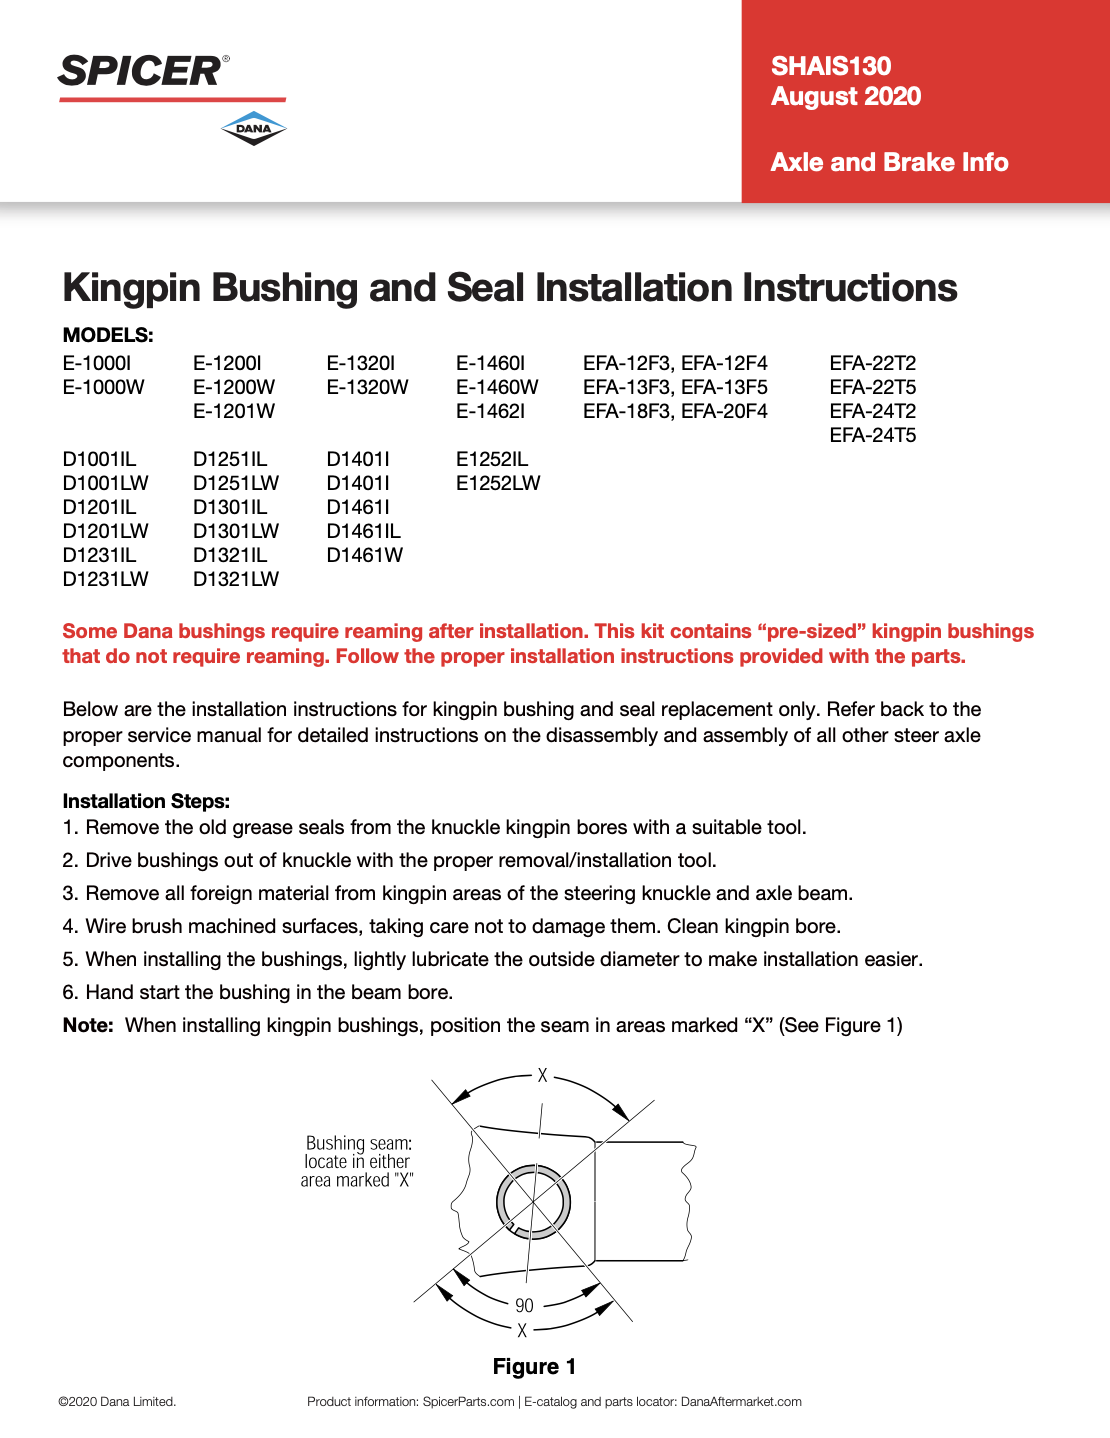 Kingpin Bushing and Seal Installation Instructions